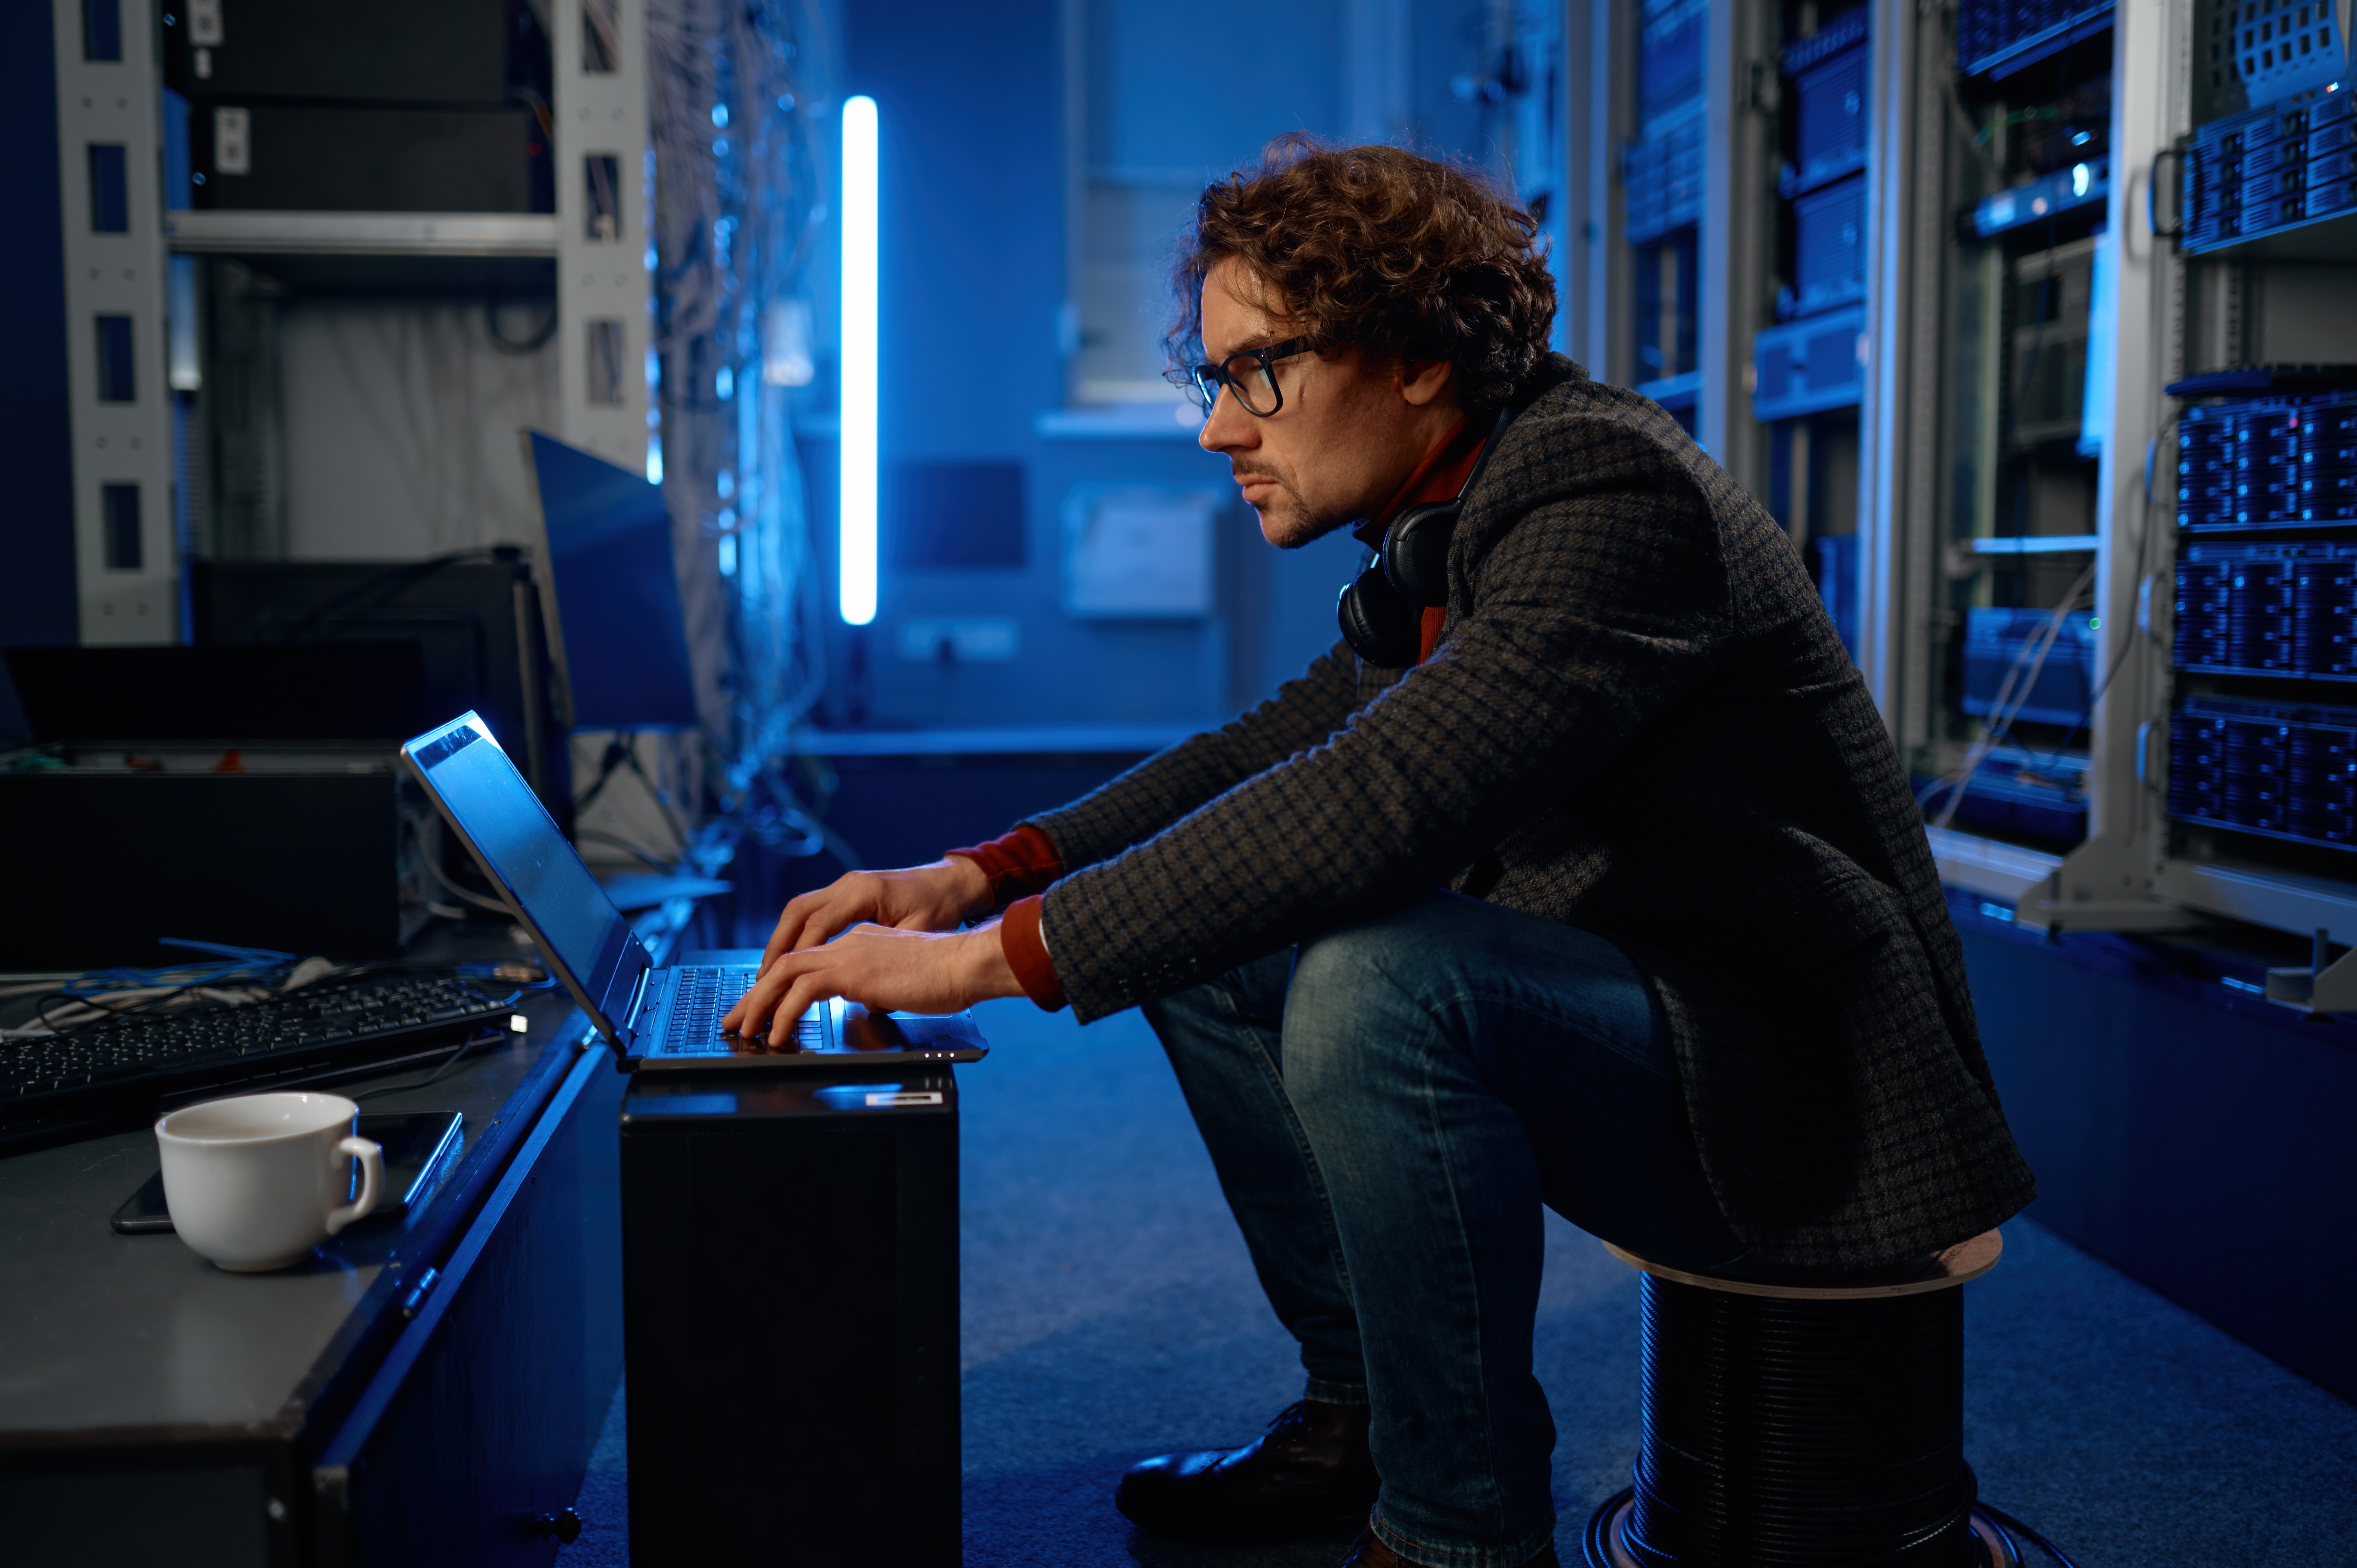 Técnico de suporte técnico da CyberNexus trabalhando em um data center moderno